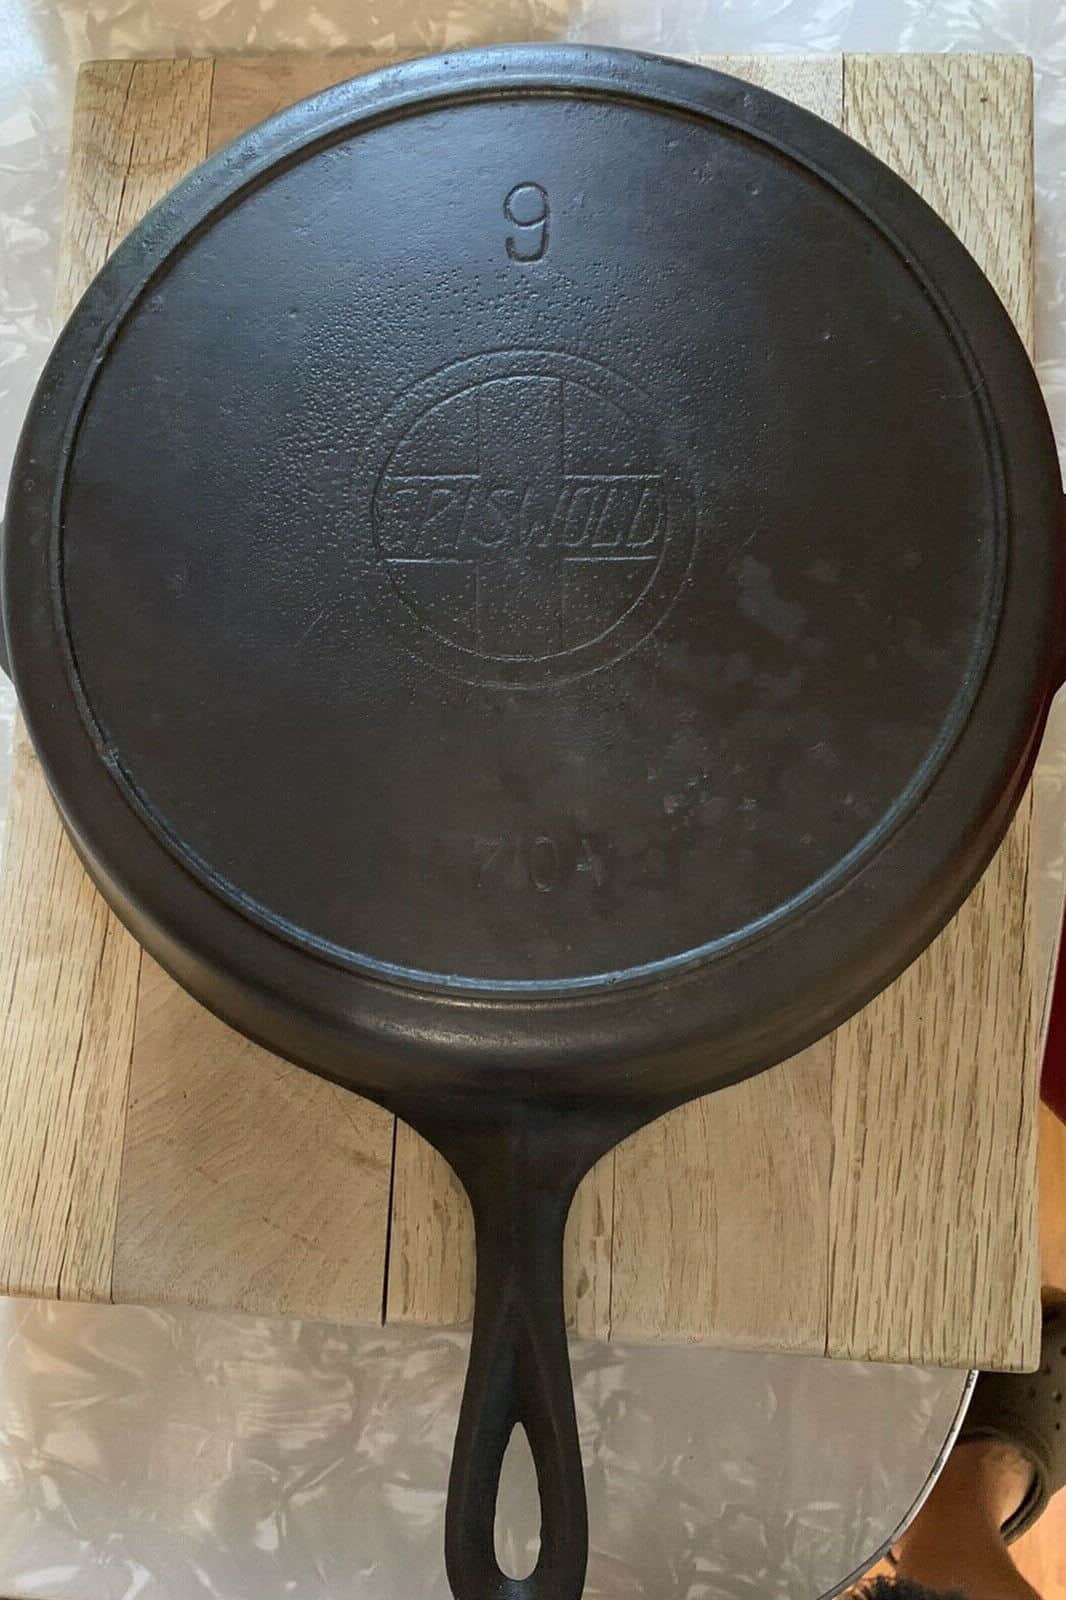 griswold cast iron pans